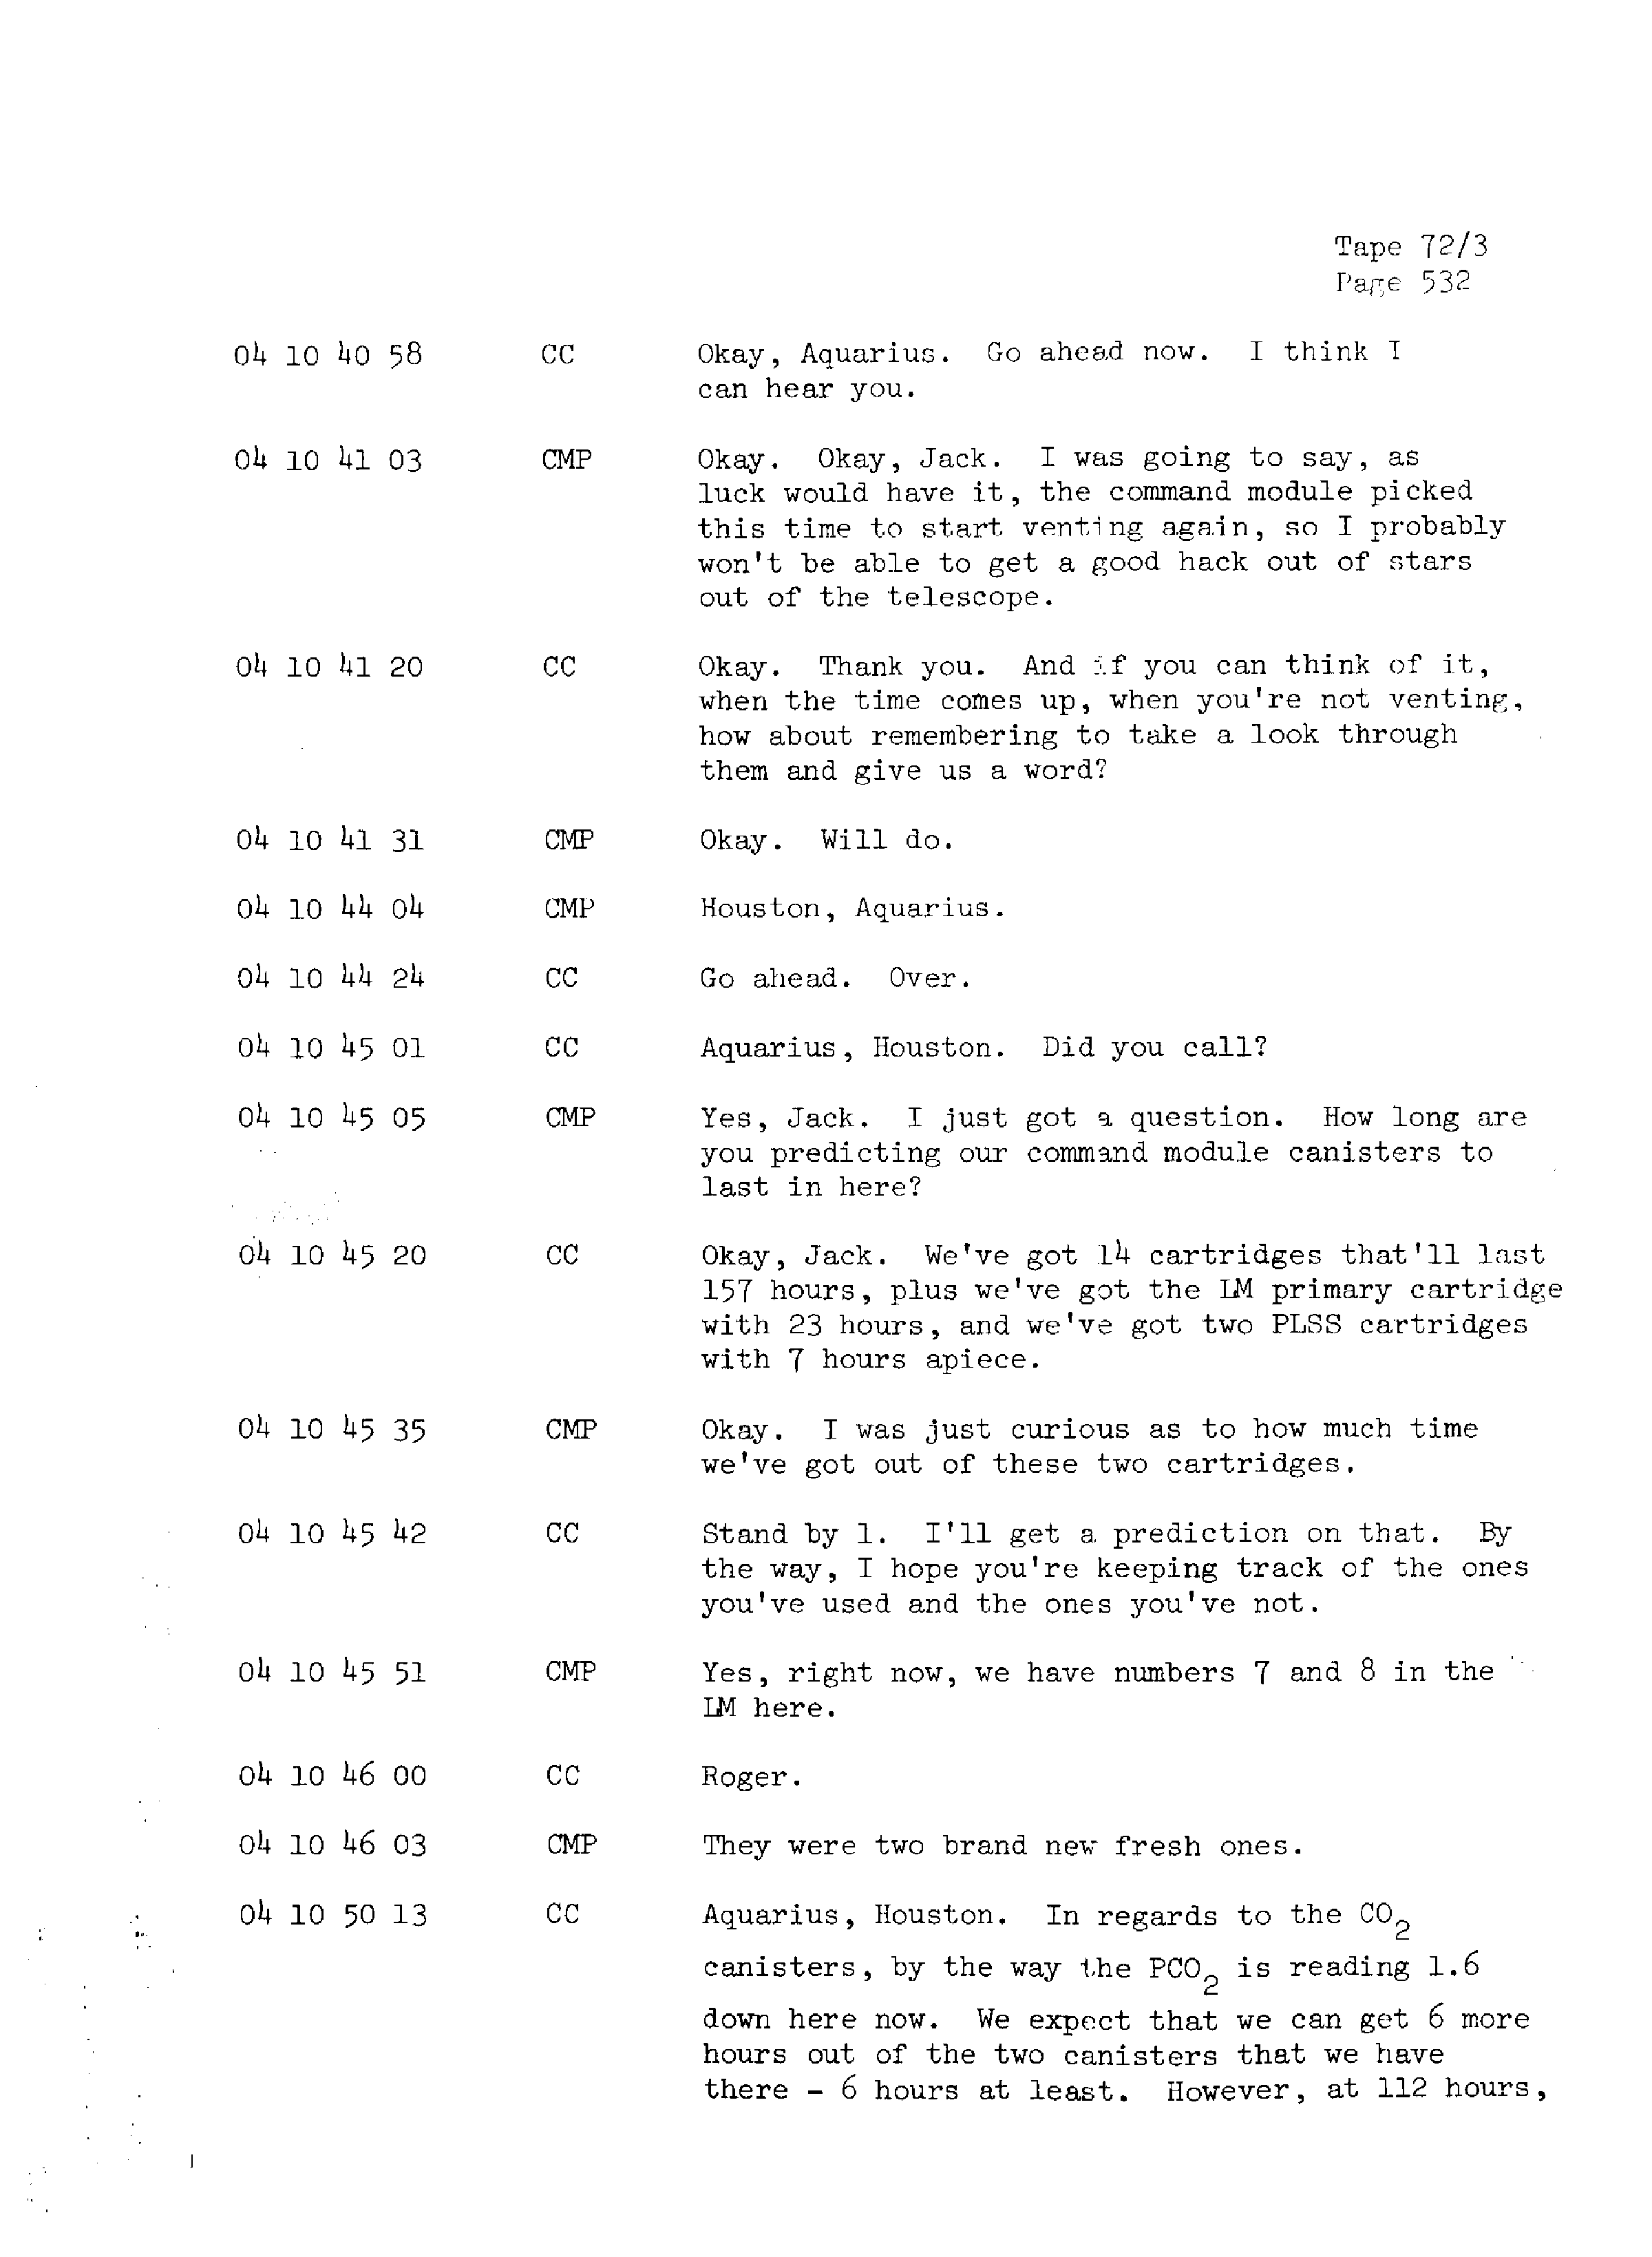 Page 539 of Apollo 13’s original transcript